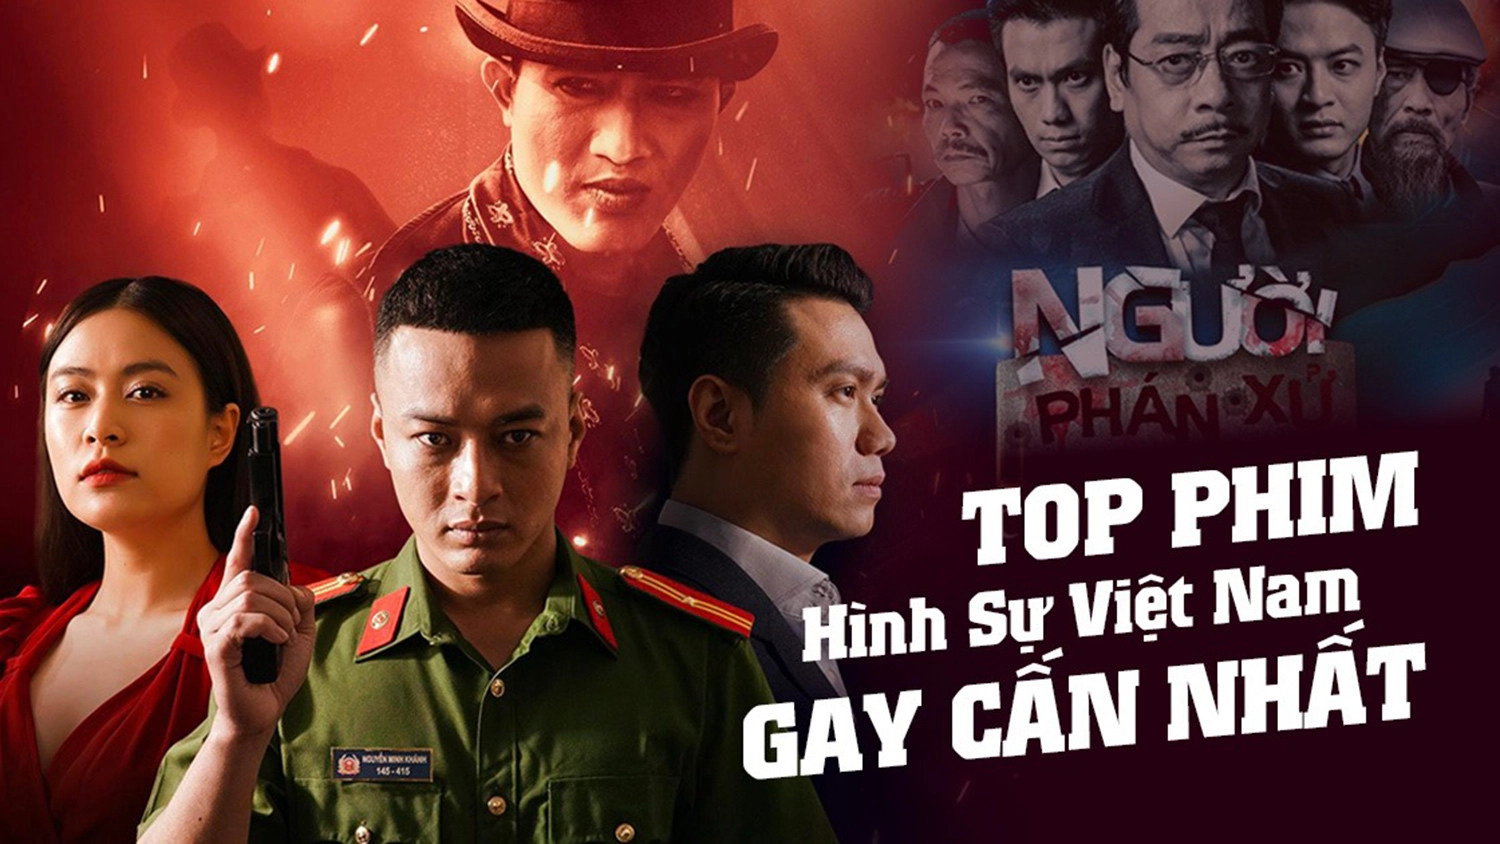 Đặc điểm nổi bật của phim hình sự Việt Nam